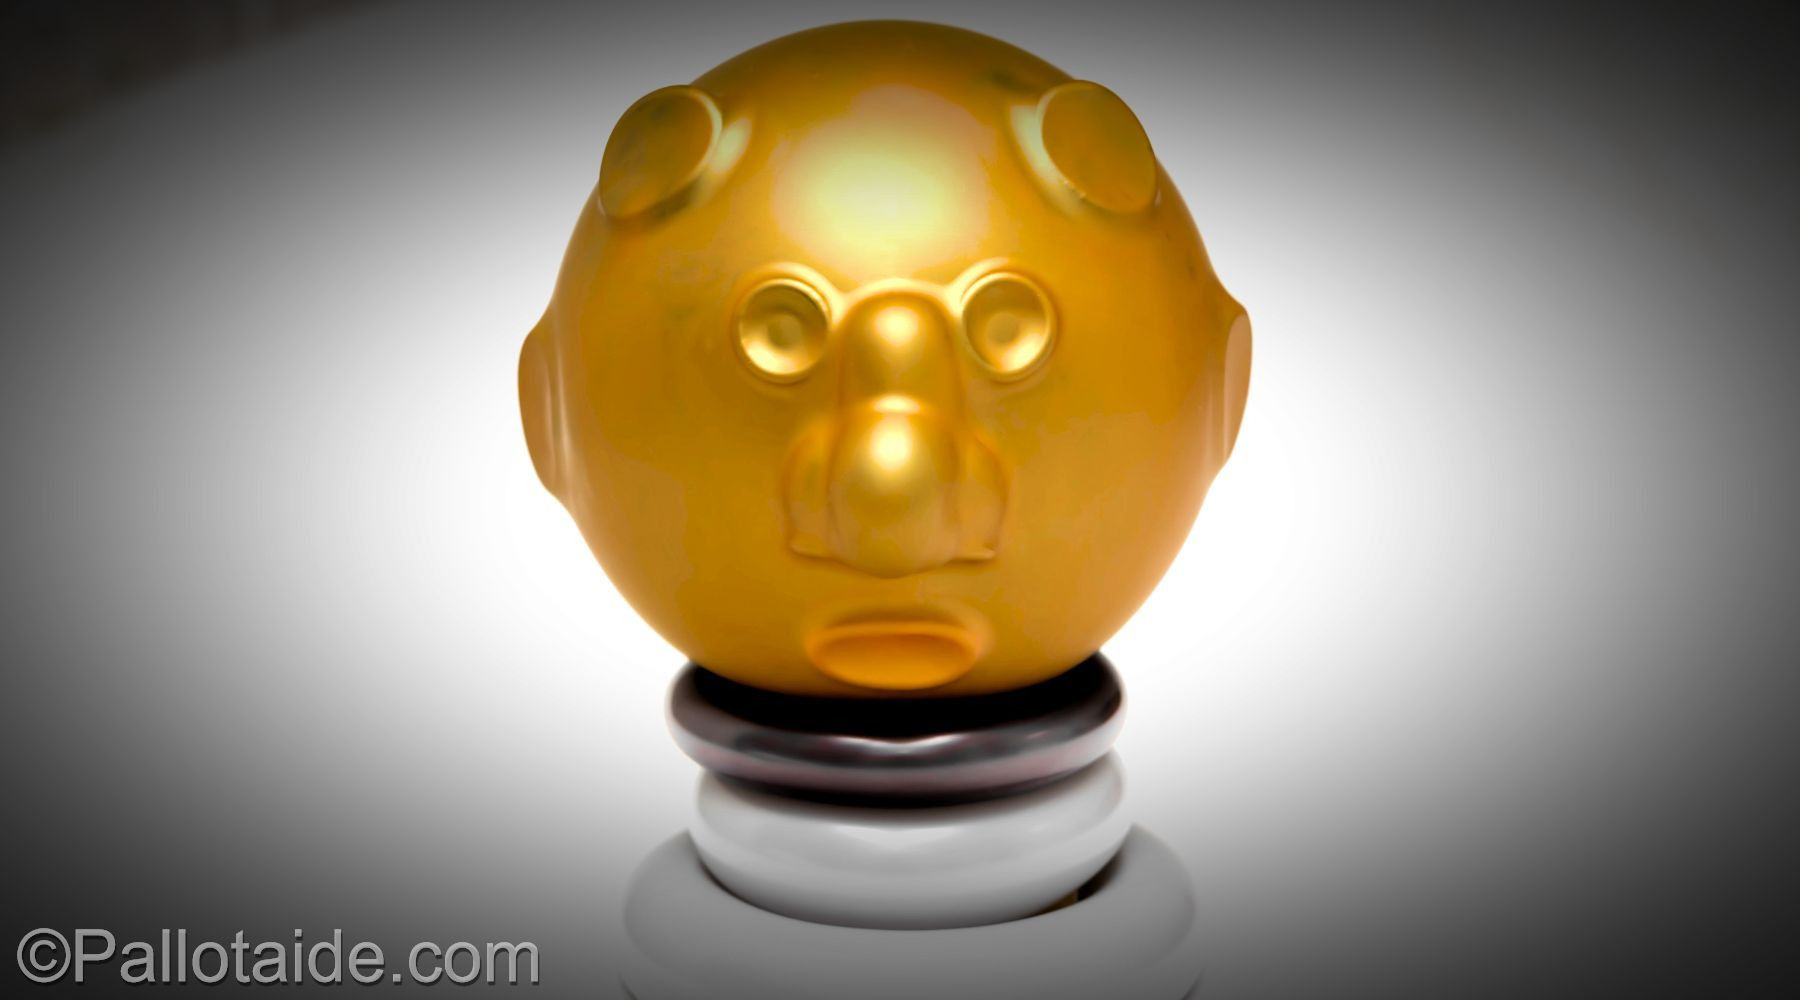 golden face statue - made using 100% latex balloons by Pallotaide - tehty pelkistä lateksi-ilmapalloista. Kultaiset kasvot.